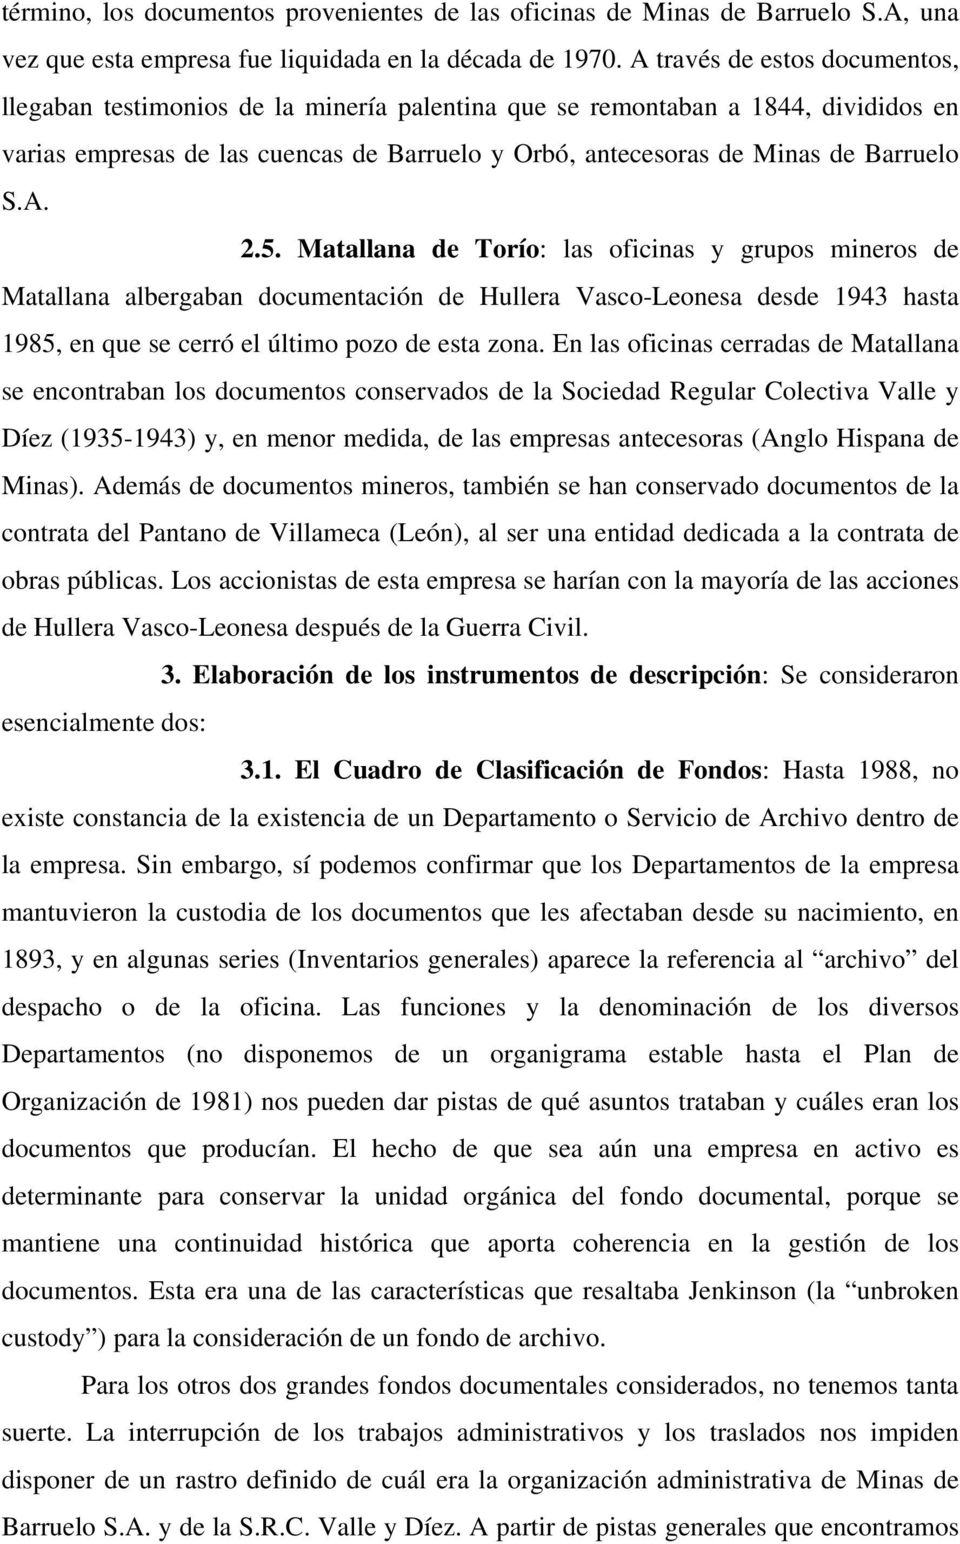 A. 2.5. Matallana de Torío: las oficinas y grupos mineros de Matallana albergaban documentación de Hullera Vasco-Leonesa desde 1943 hasta 1985, en que se cerró el último pozo de esta zona.